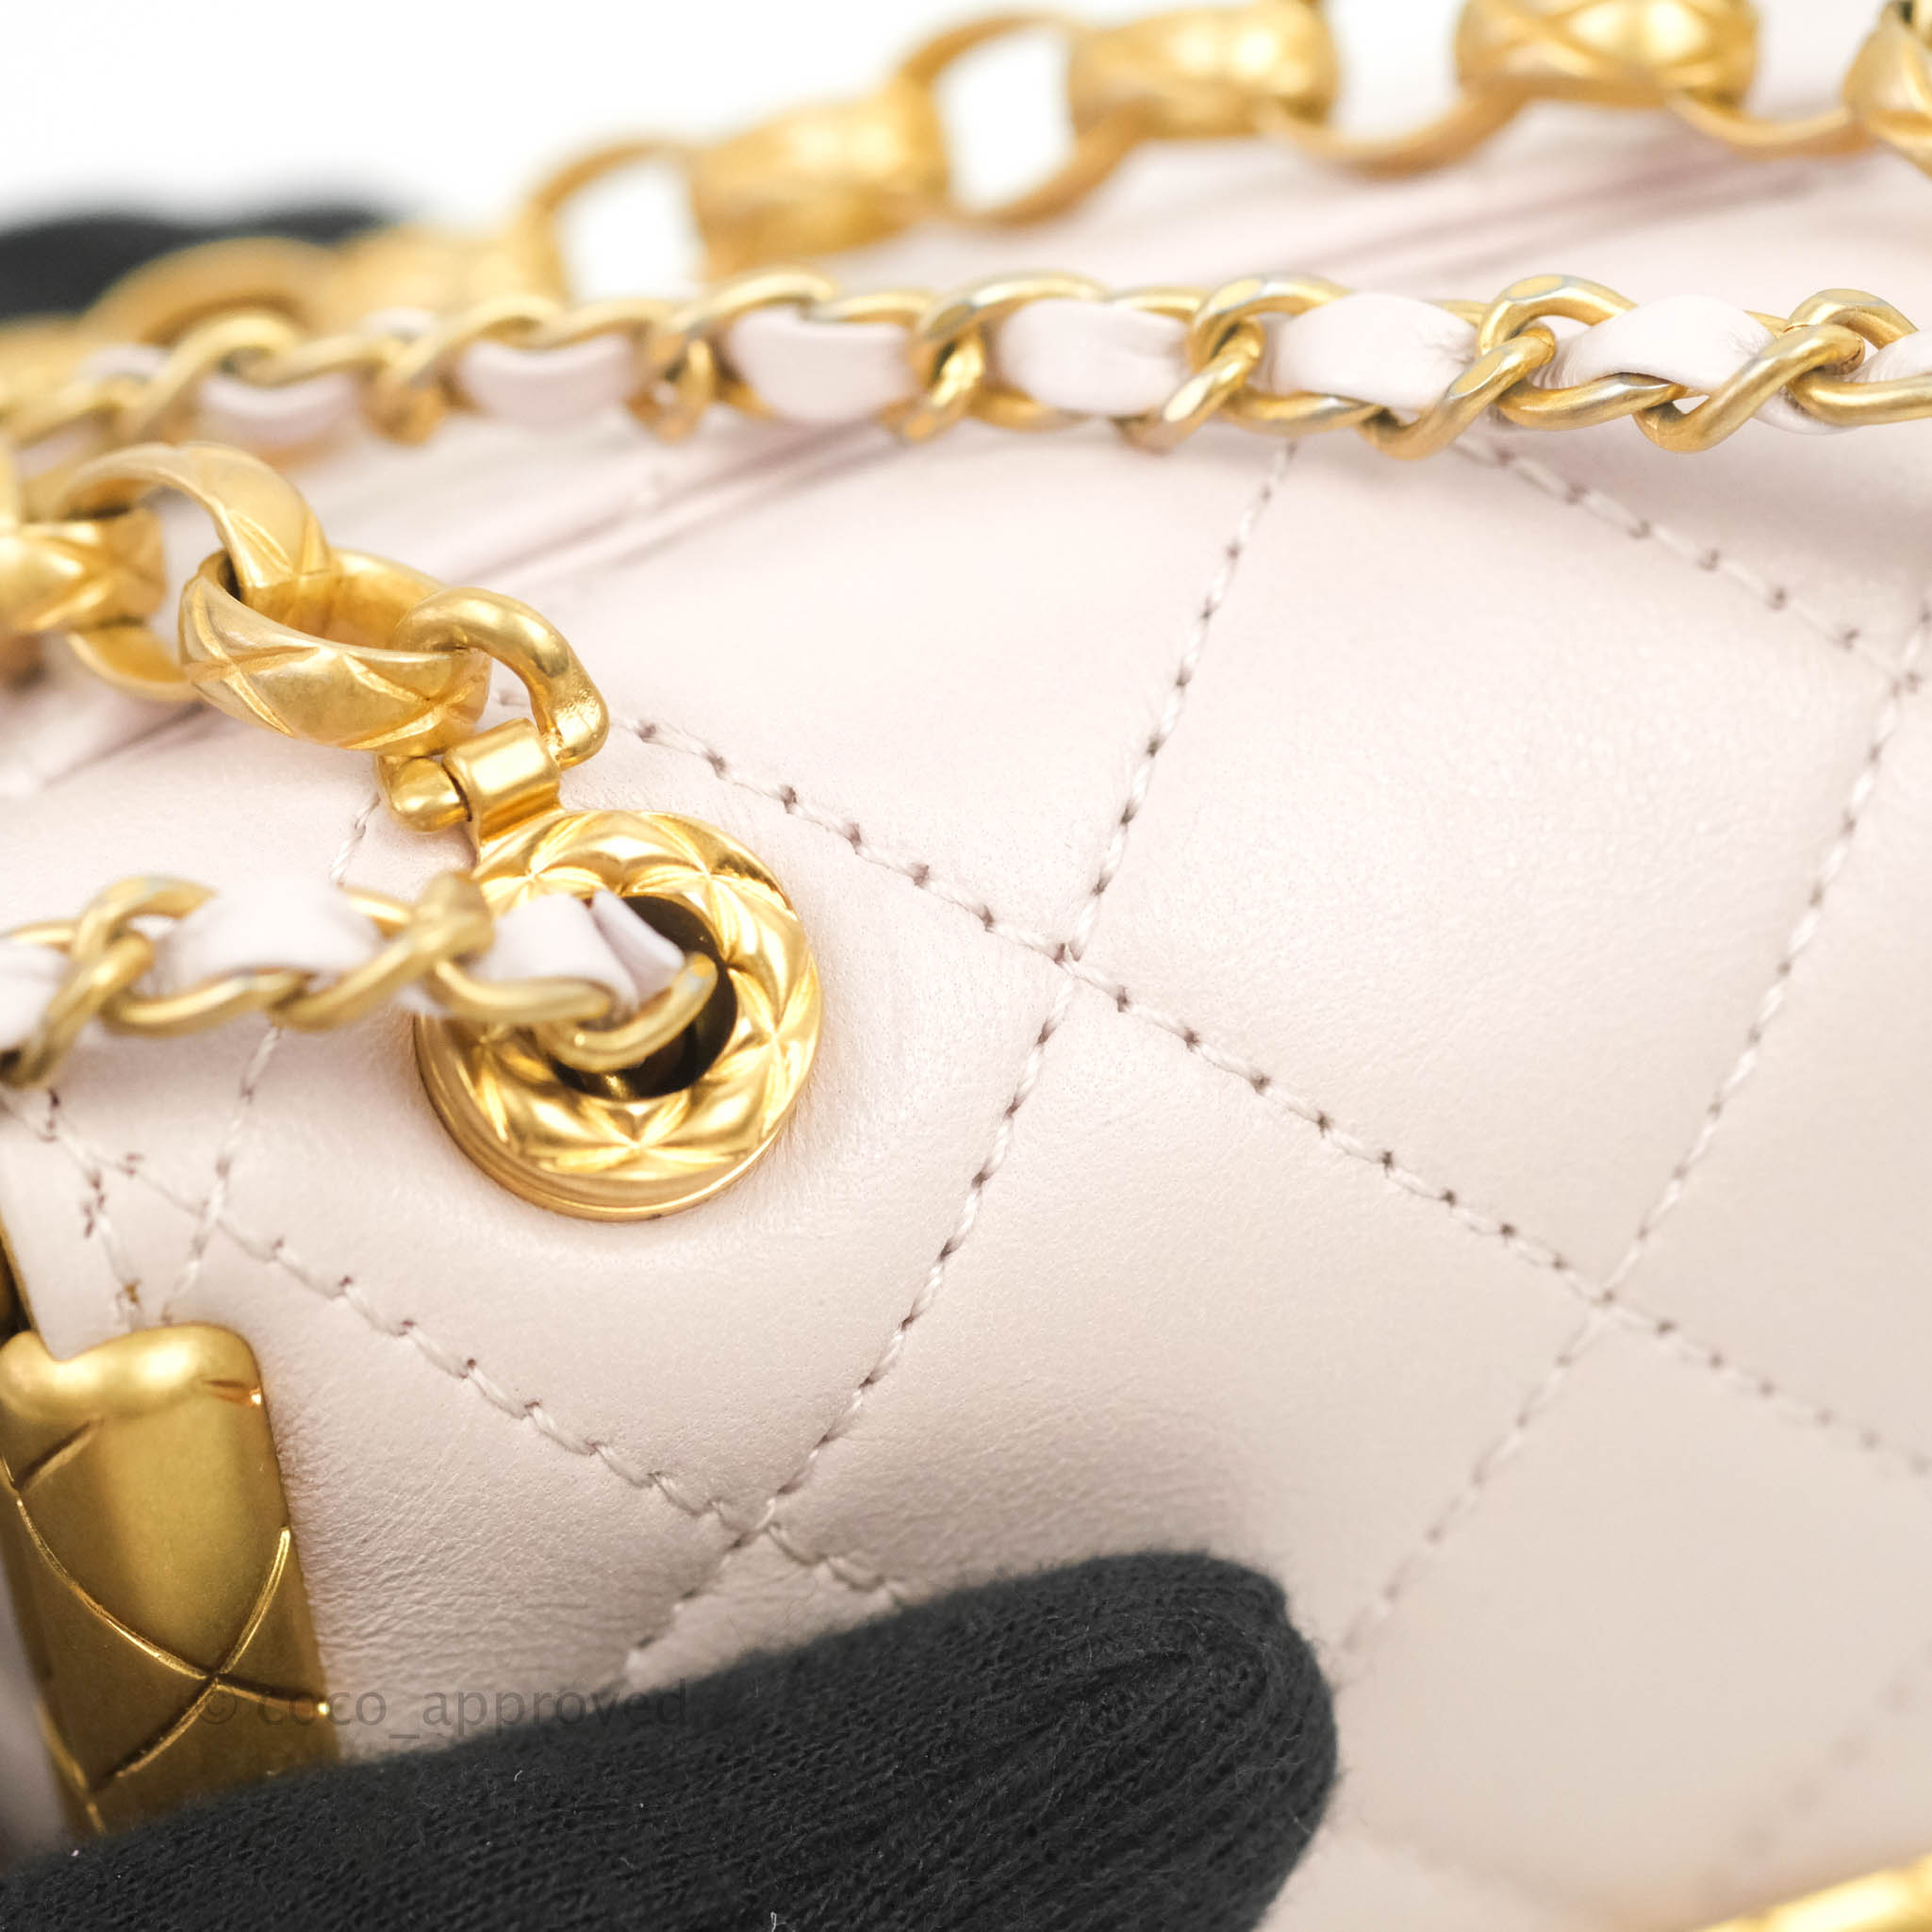 Chanel Metallic Gold Quilted Lambskin Kiss Lock Whipstitch Mini  Q6AGAN4NDB000